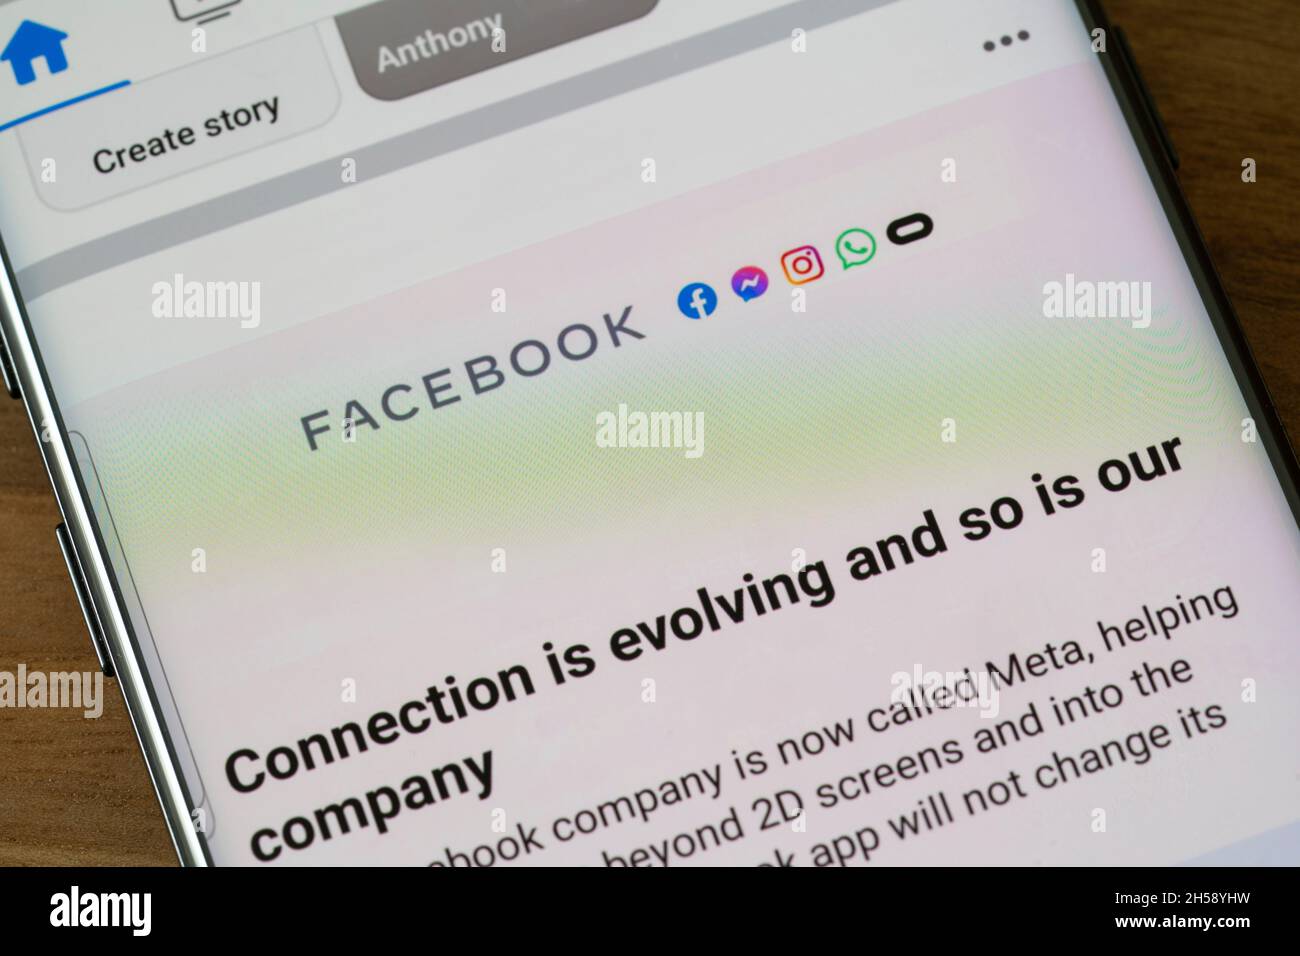 Facebook s'est rebaptisé Meta - la marque couvre les applications Facebook, Messenger, Instagram et WhatsApp - affichées sur l'écran d'un smartphone.ROYAUME-UNI Banque D'Images